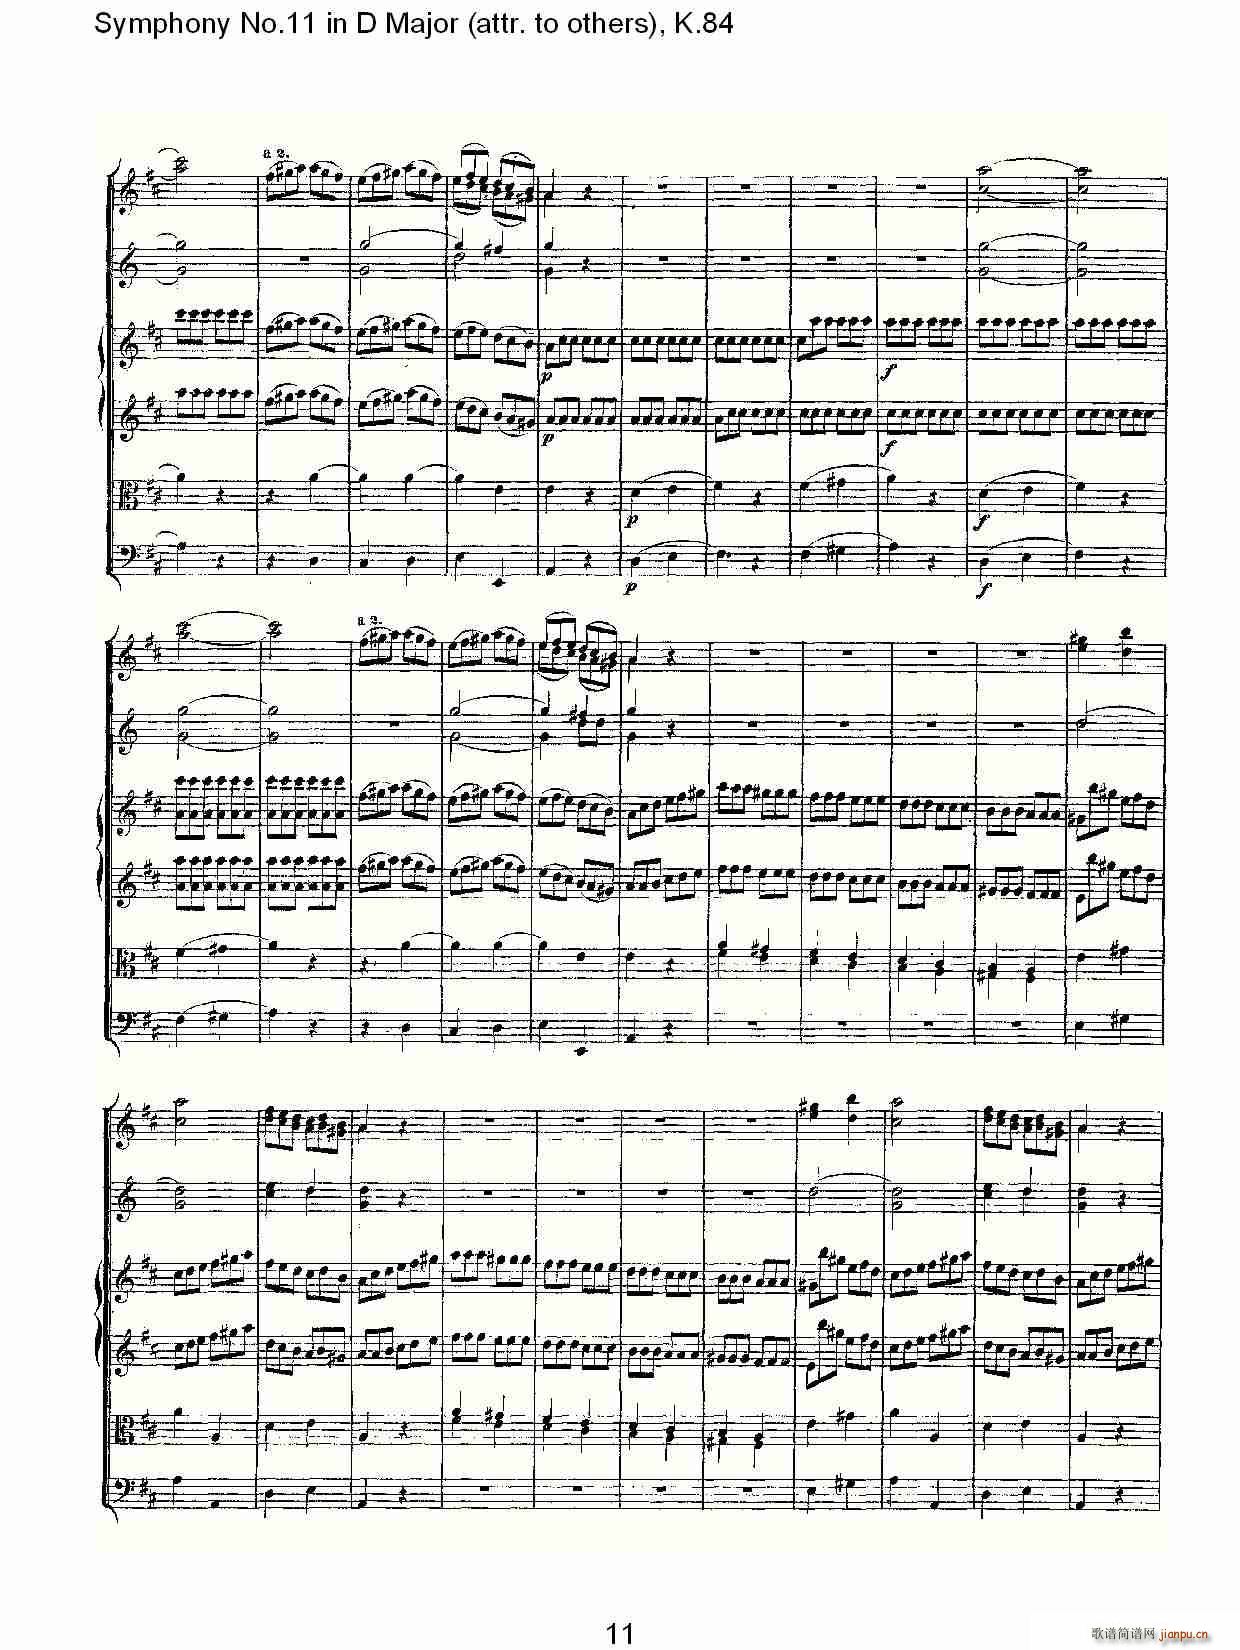 Symphony No.11 in D Major(ʮּ)11